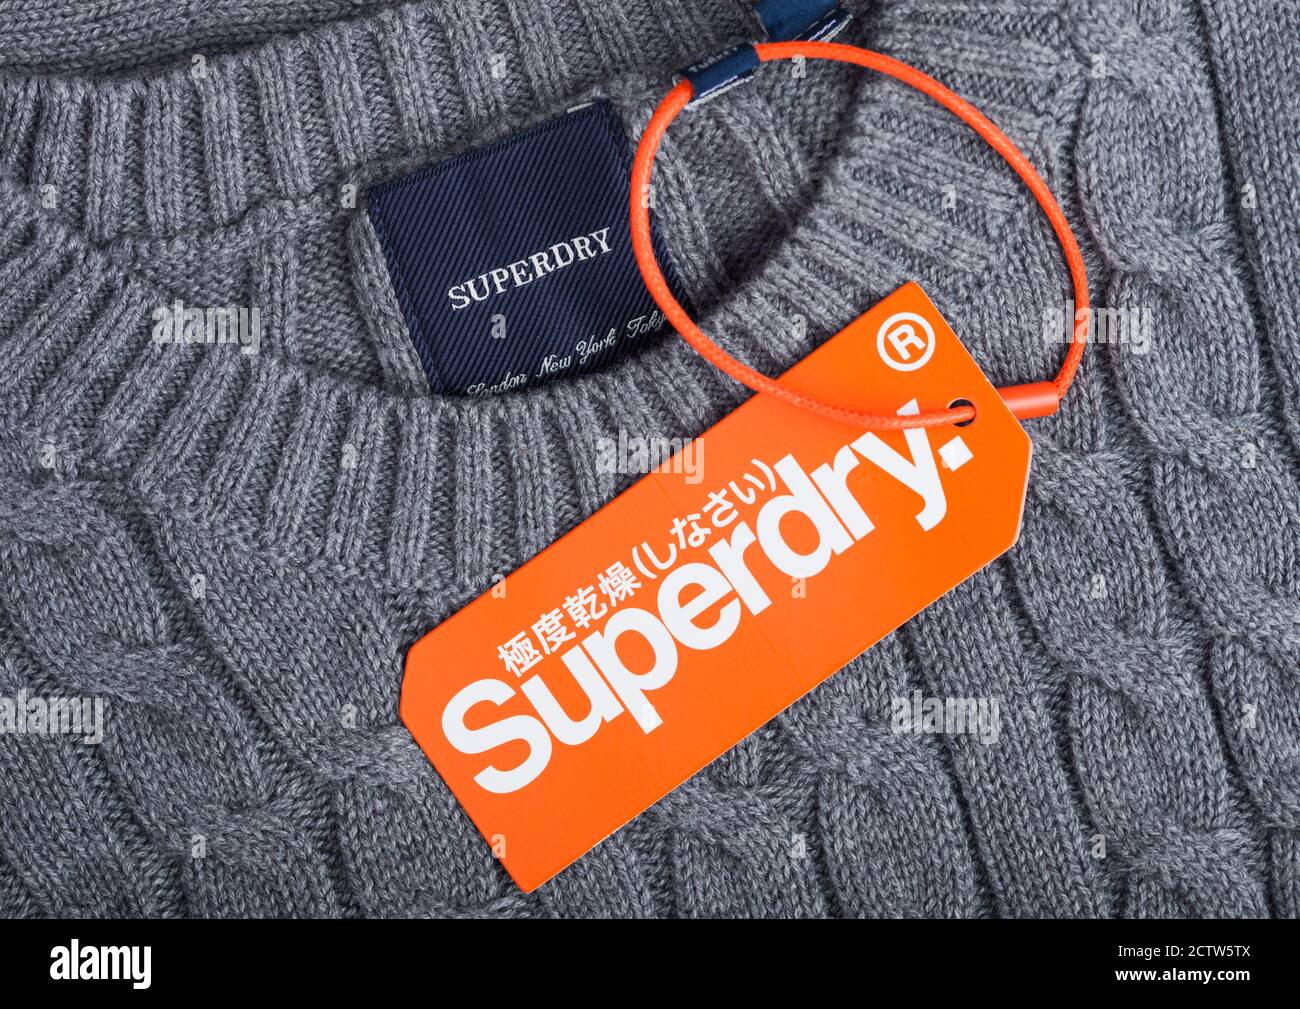 LONDRA, UK - 09 SETTEMBRE 2020: Etichetta e etichetta di abbigliamento Superdry su tessuto di lana grigio. Foto Stock